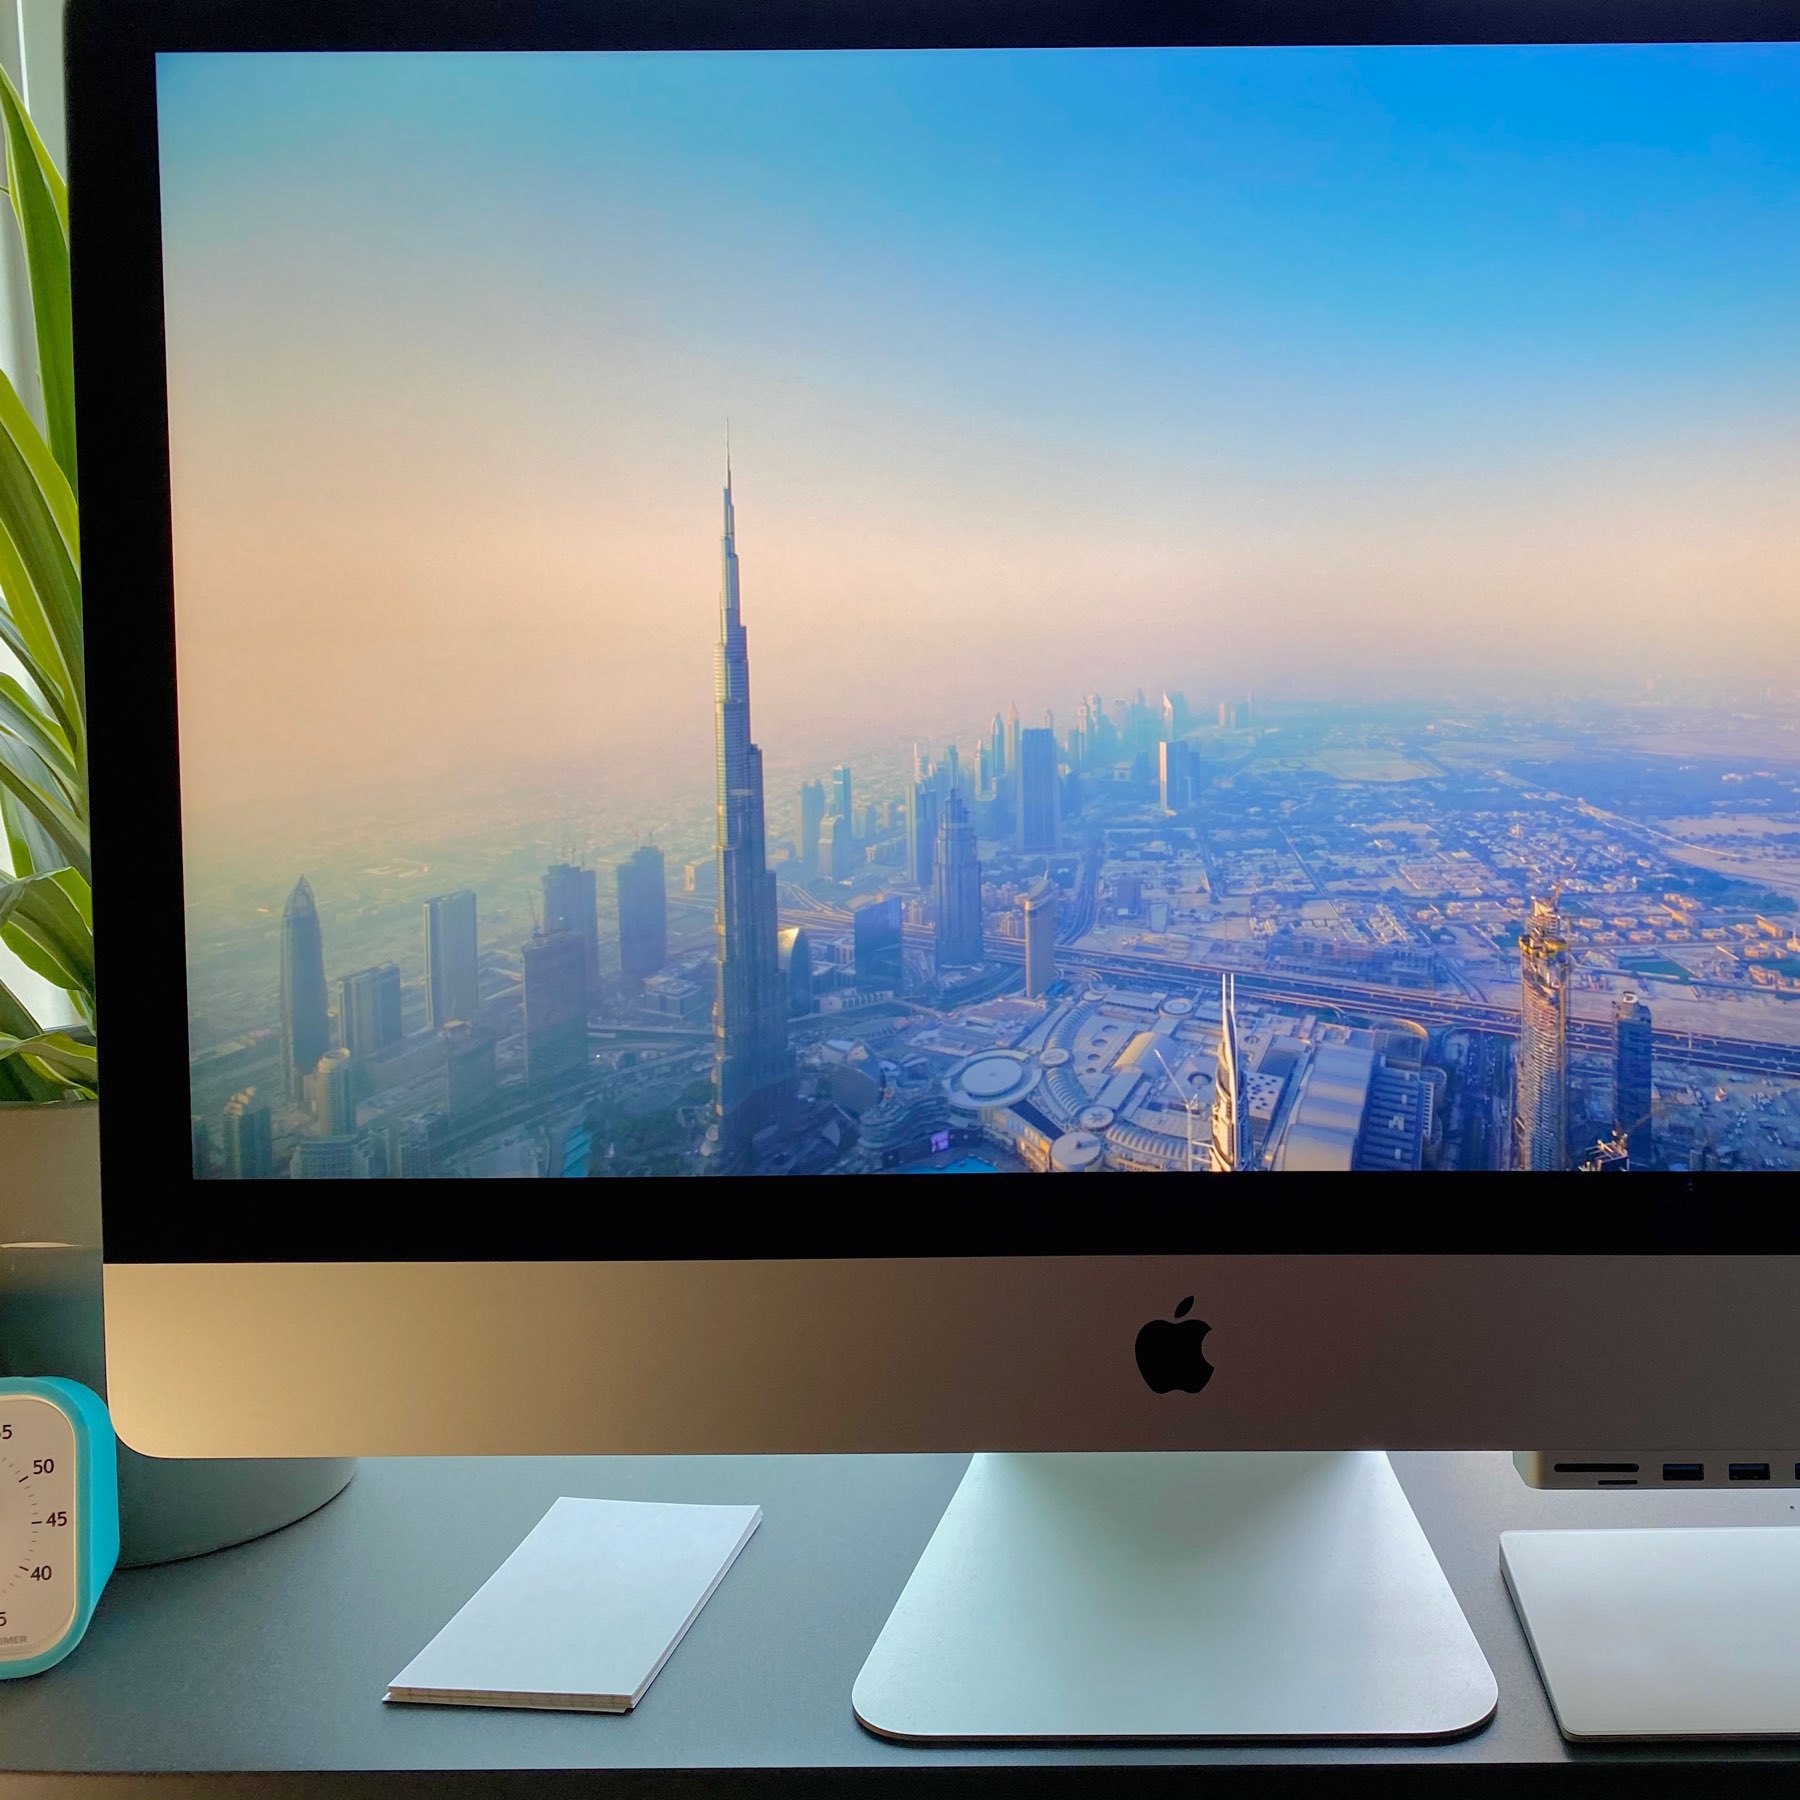 iMac desktop with arial screensaver